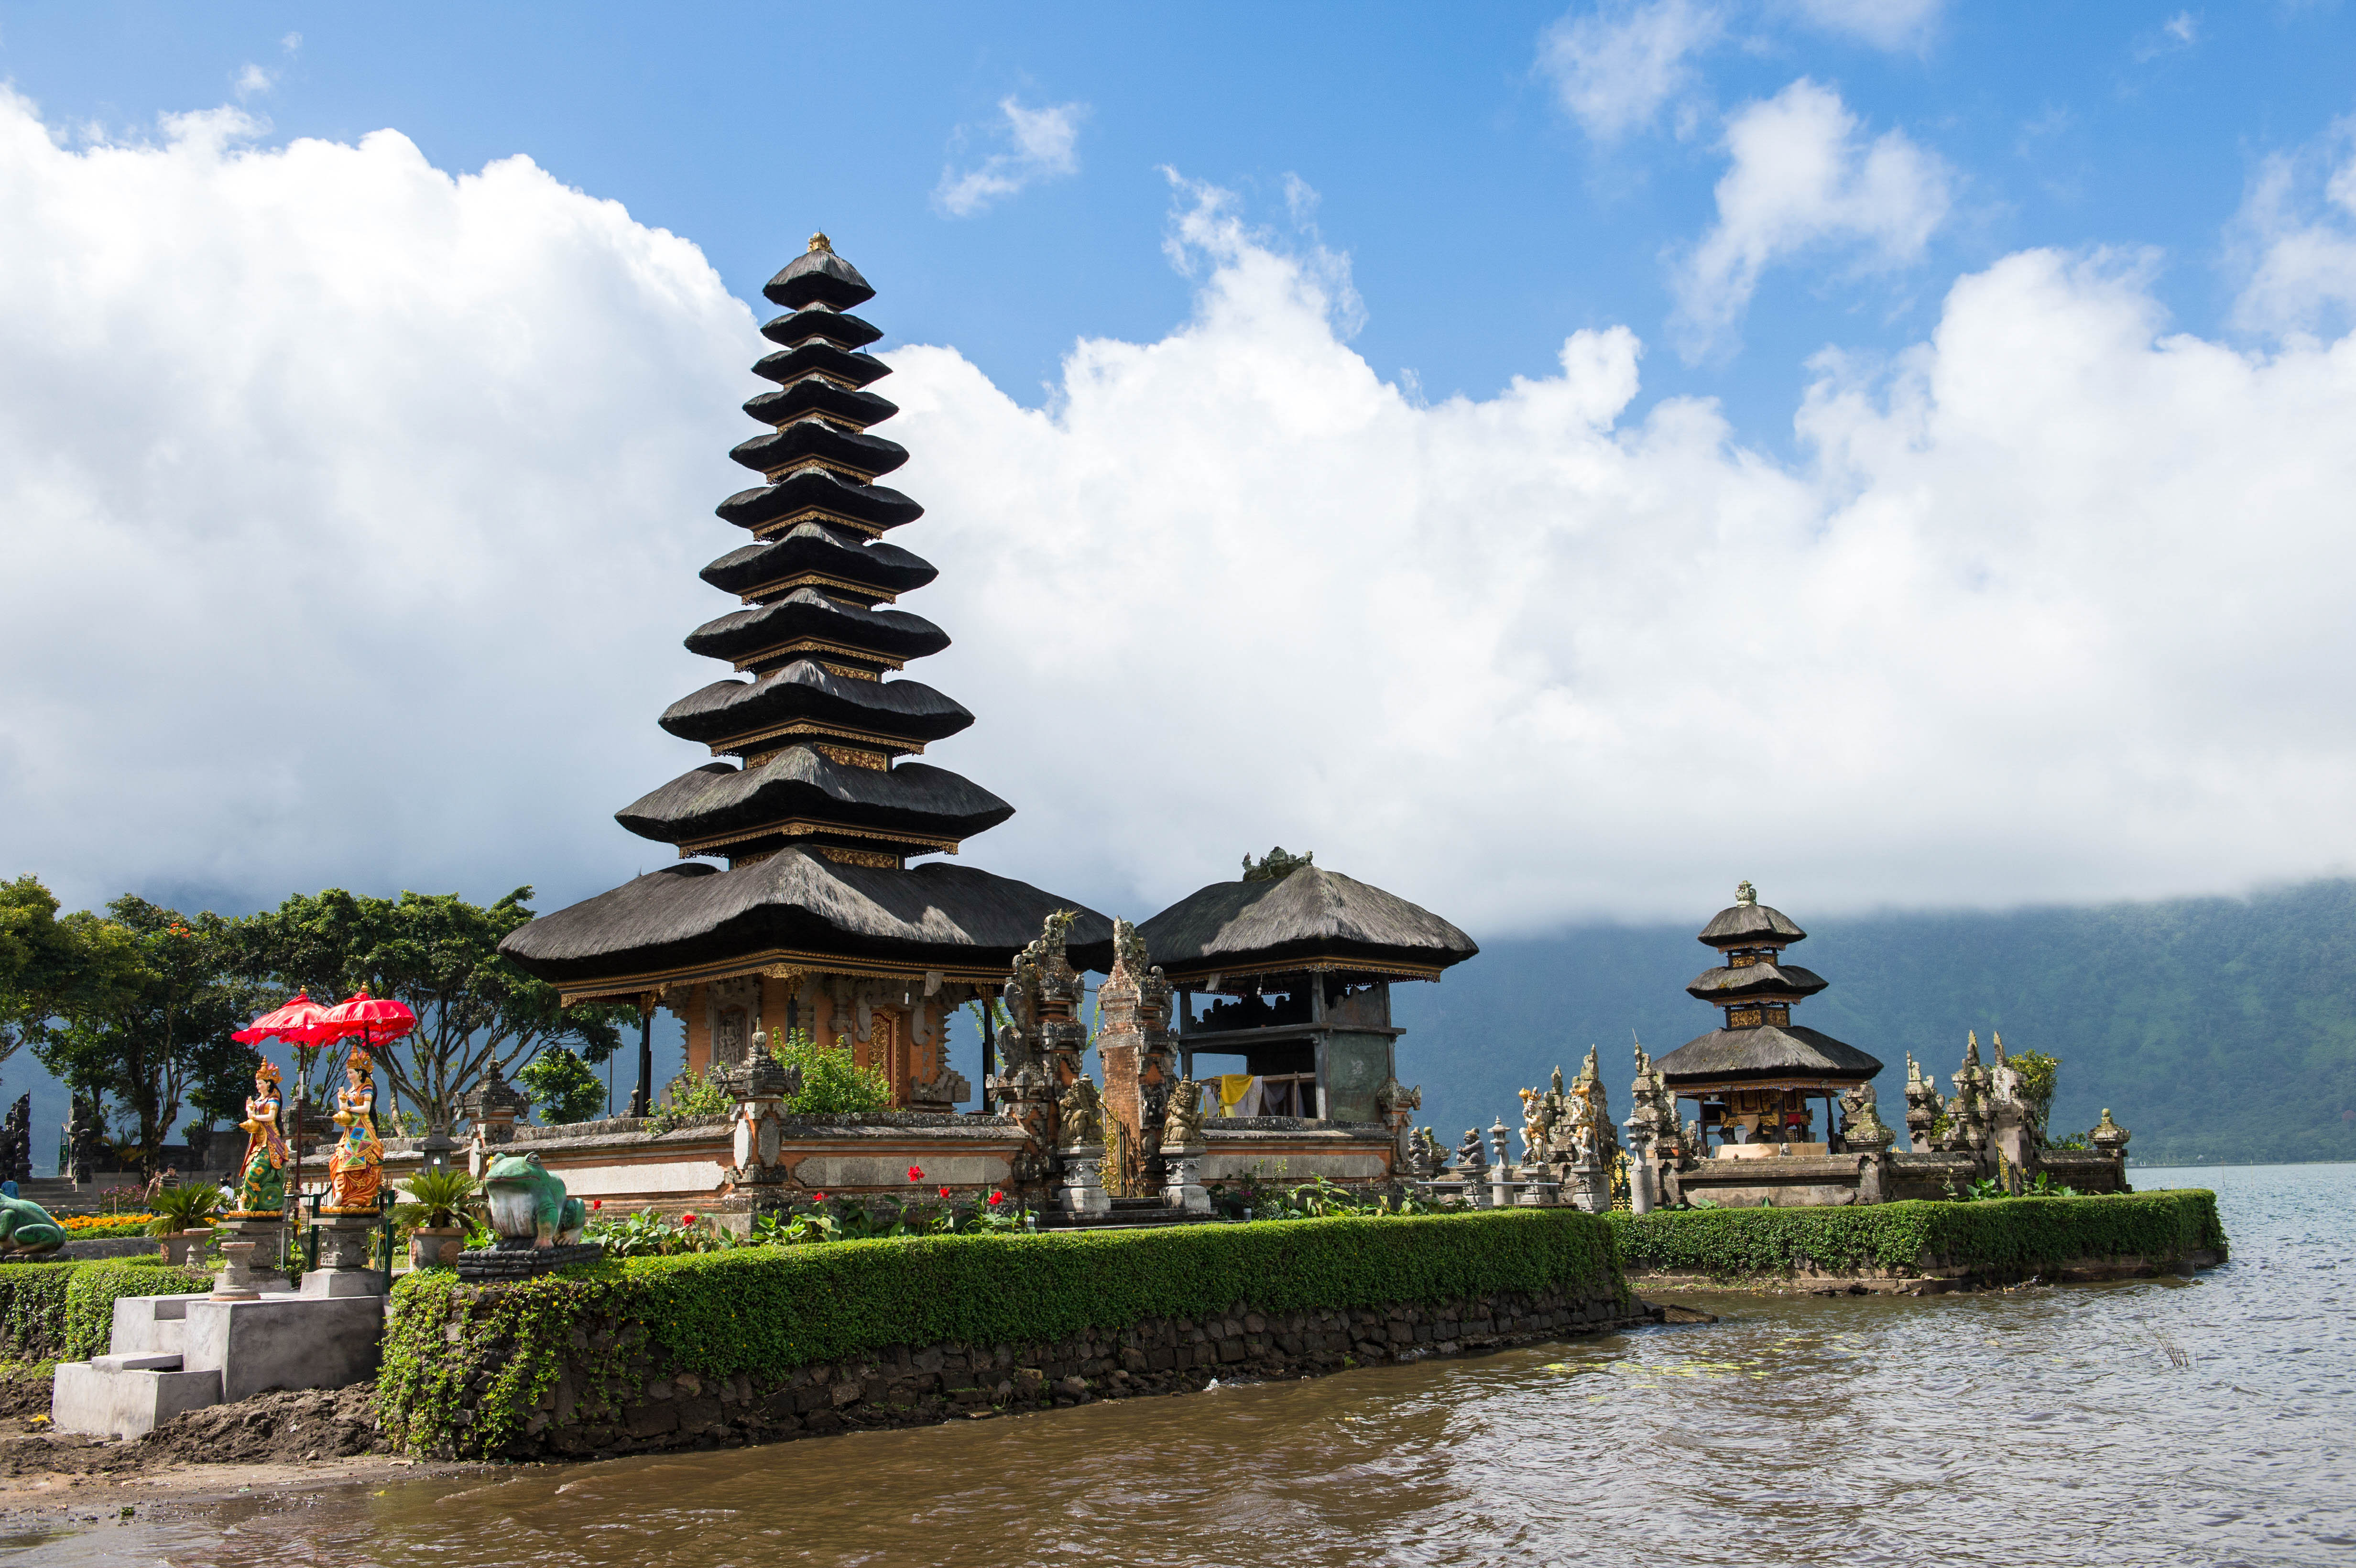 Bali Architecture - IMB